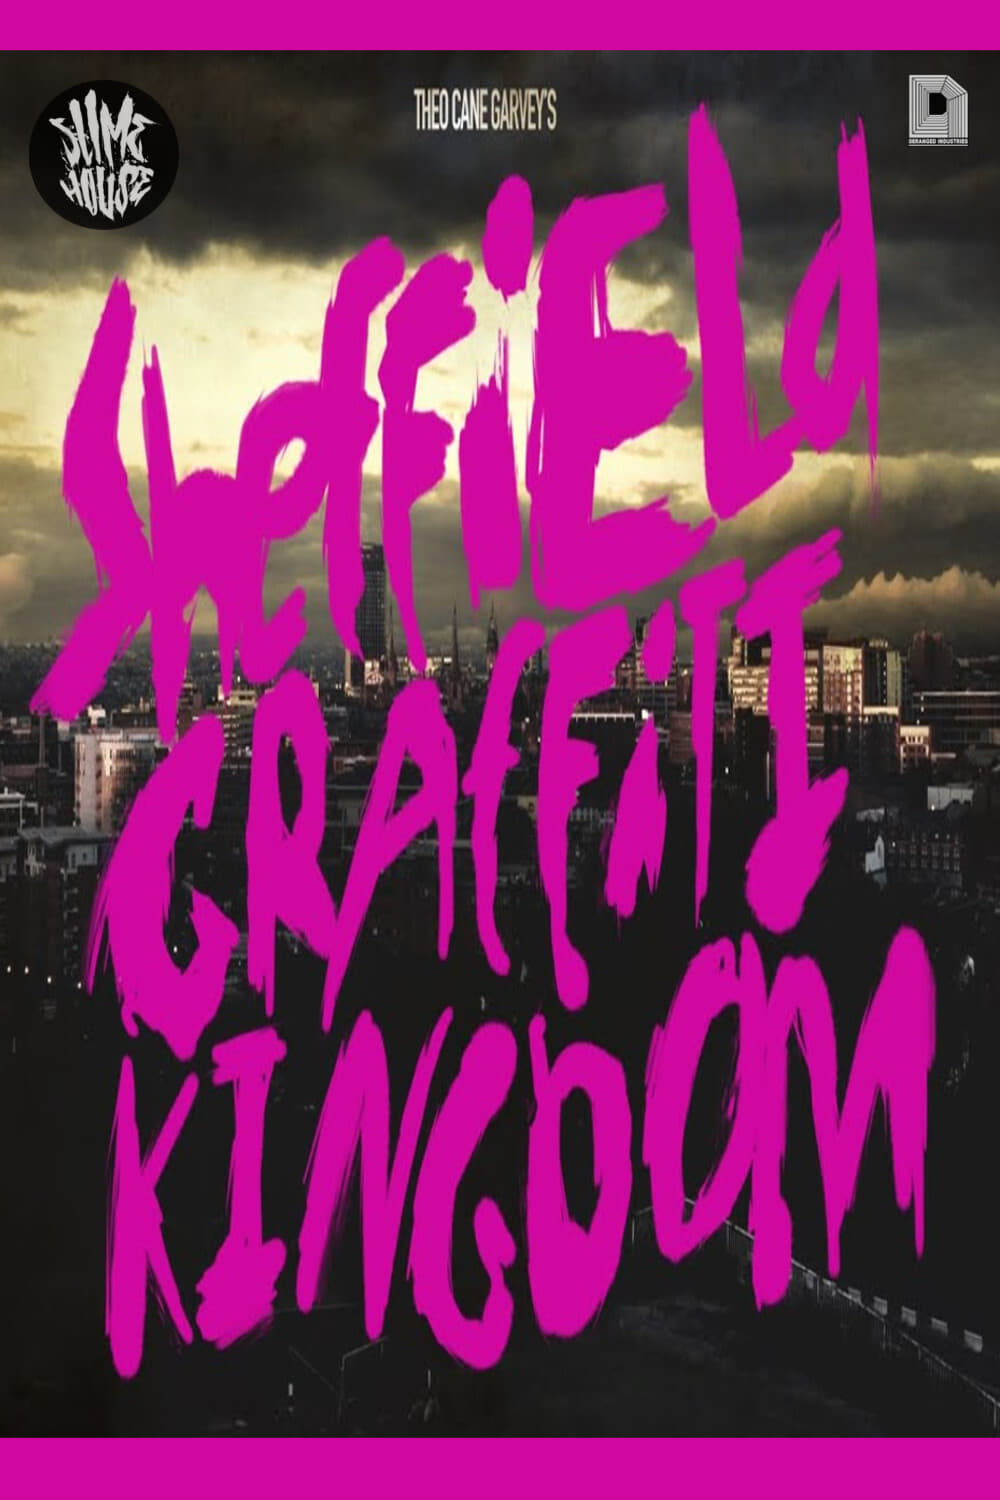 Sheffield Graffiti Kingdom